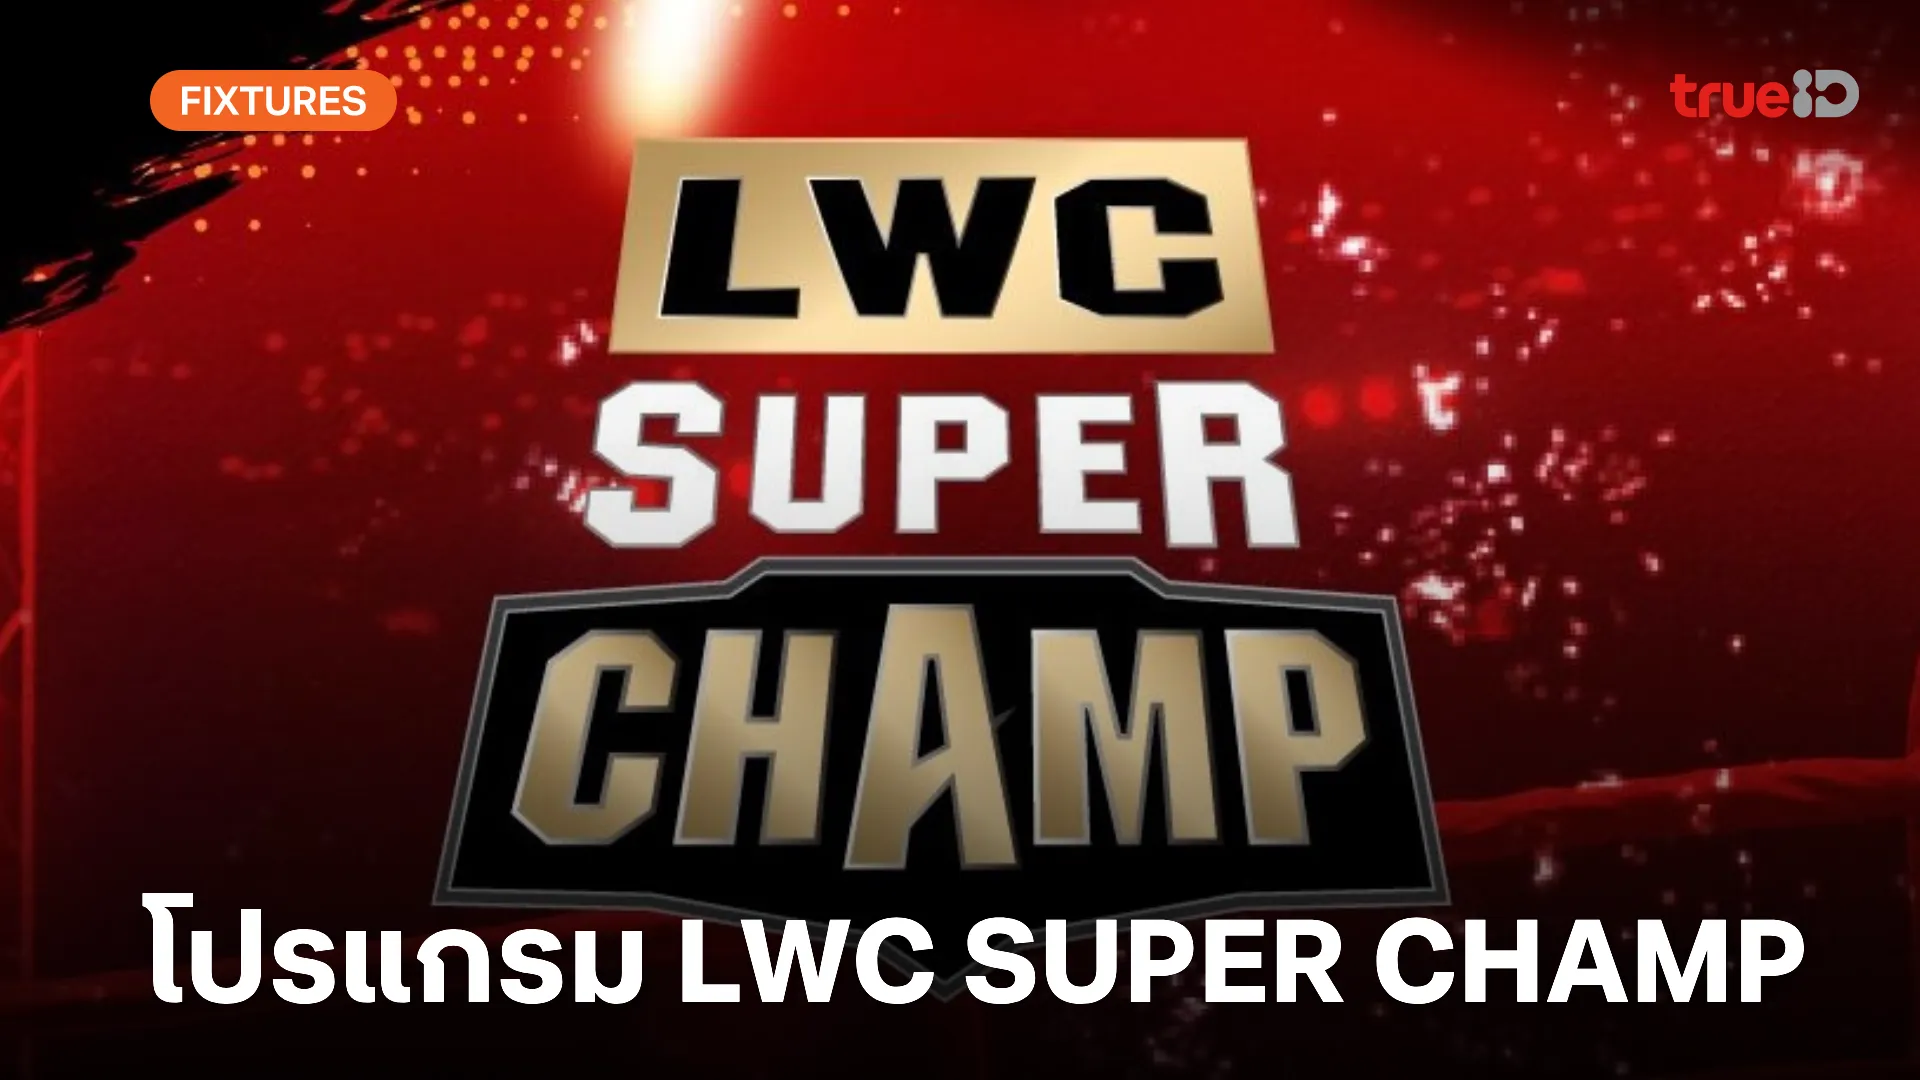 โปรแกรมมวยไทย ช่อง 8 LWC Super Champ วันเสาร์ที่ 18 พ.ค. พร้อมลิ้งก์ดูมวยสด